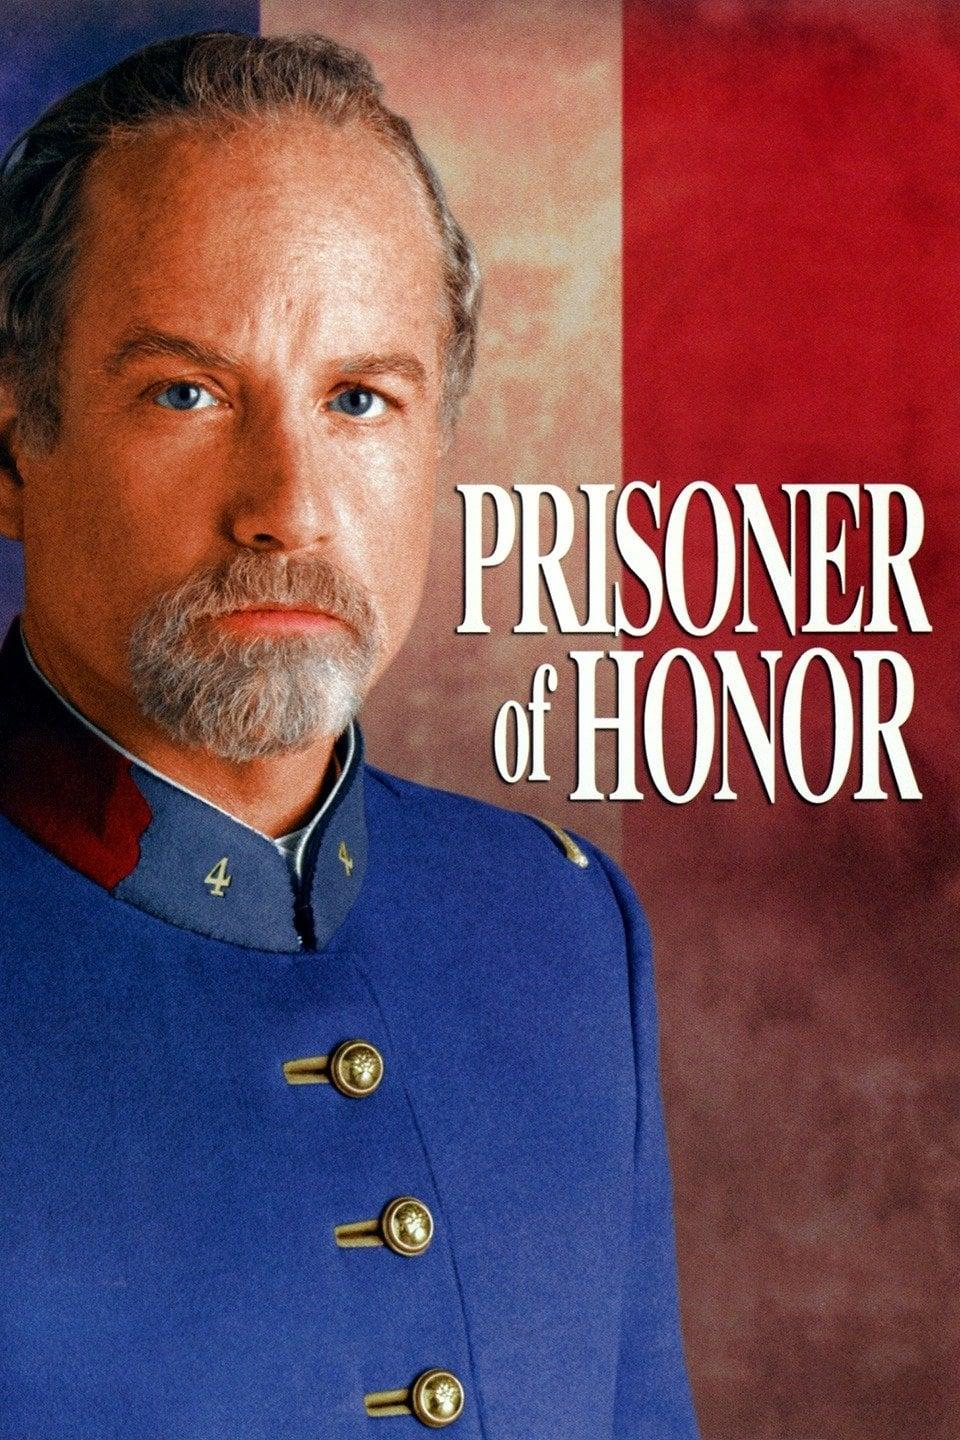 Prisoner of Honor poster